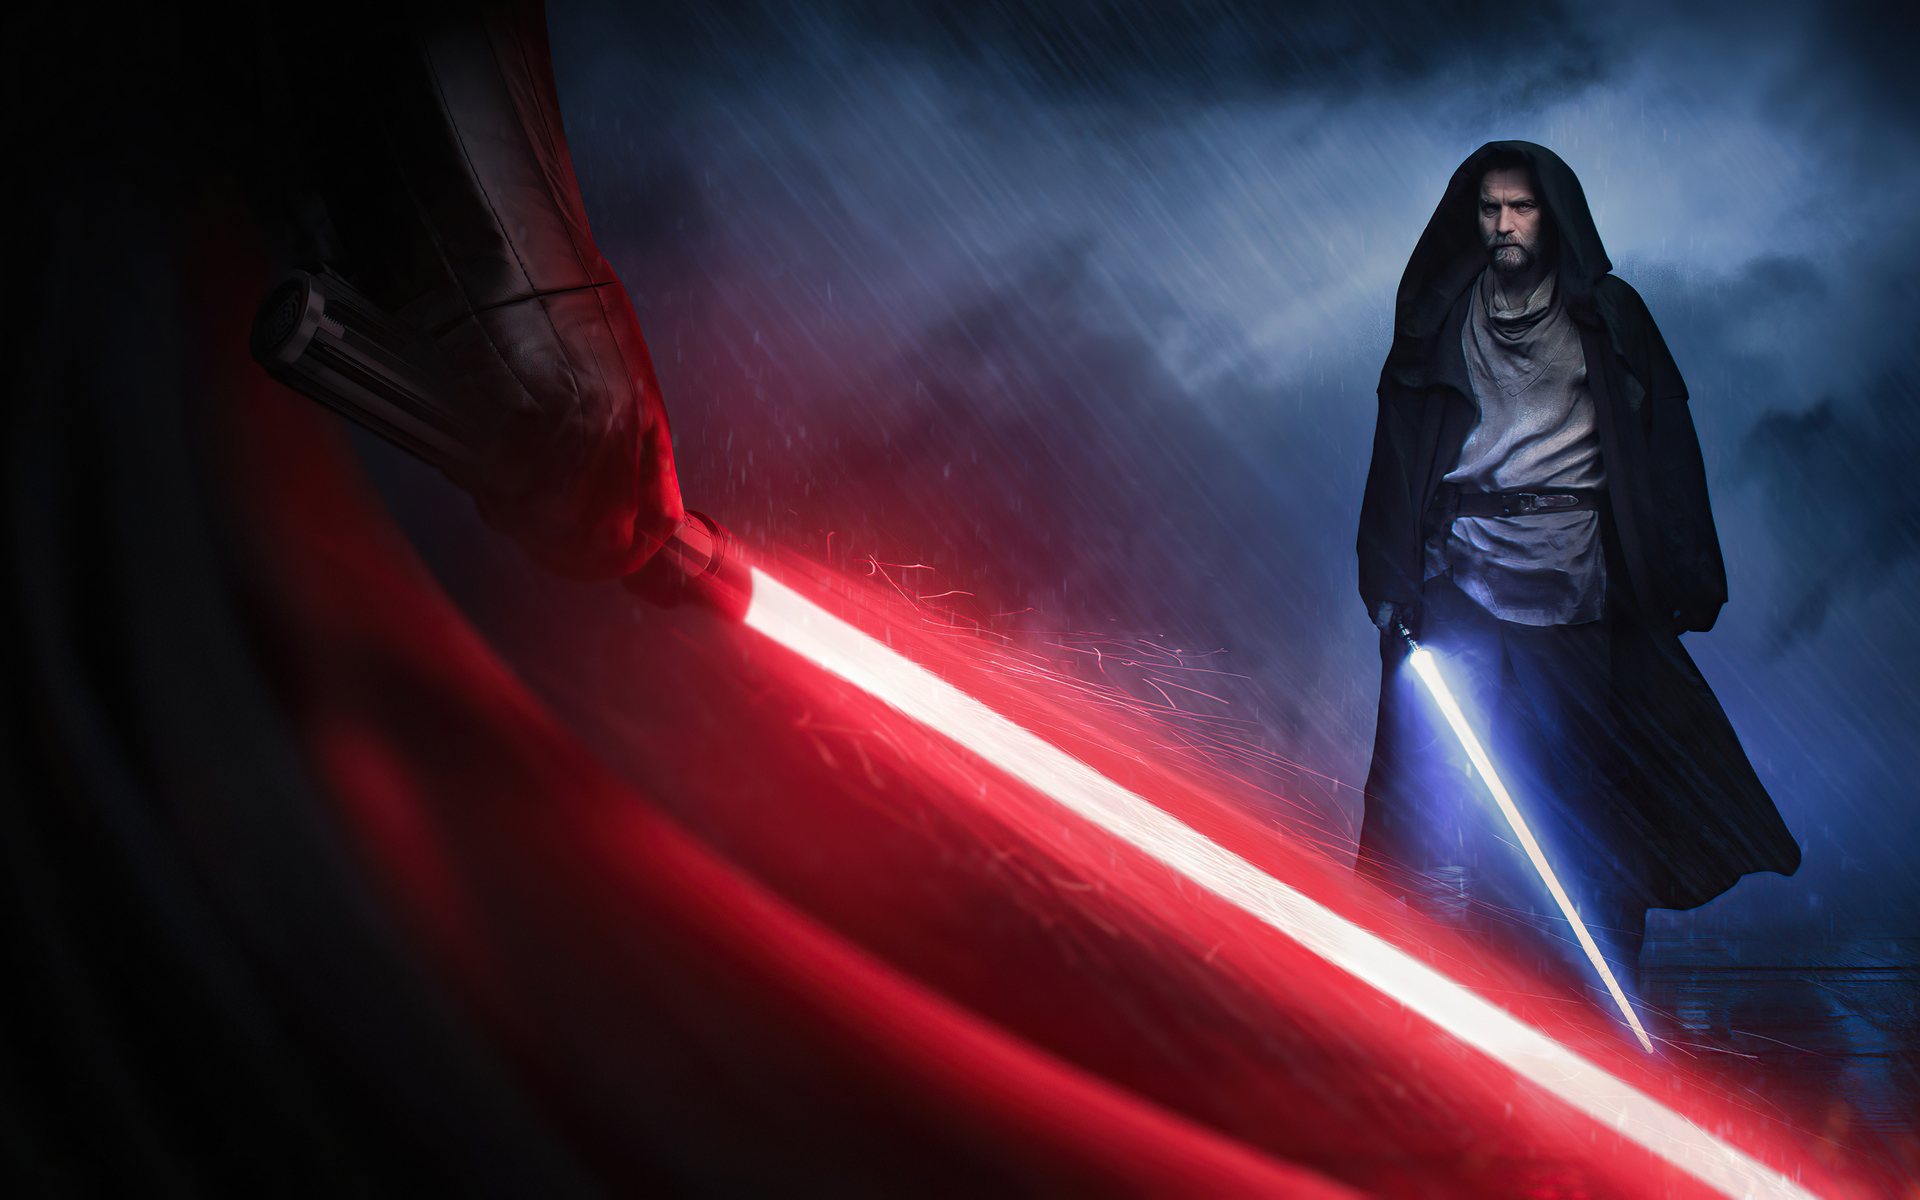 3040x1440 Resolution Darth Vader Vs Obi Wan Kenobi HD Cool Star Wars ...